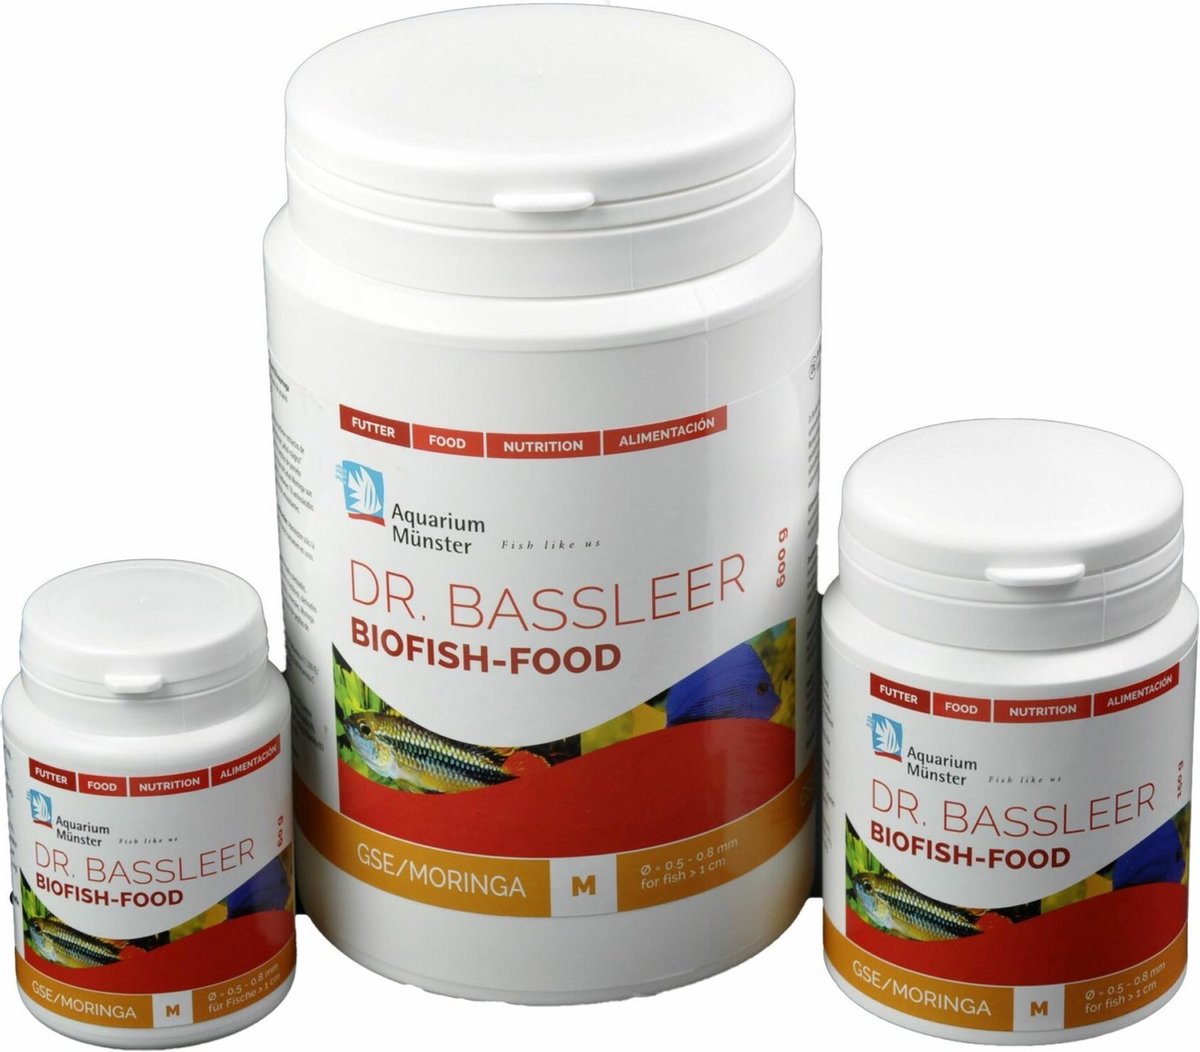 GSE/Moringa – Dr. Bassleer BioFish Food 150gr M